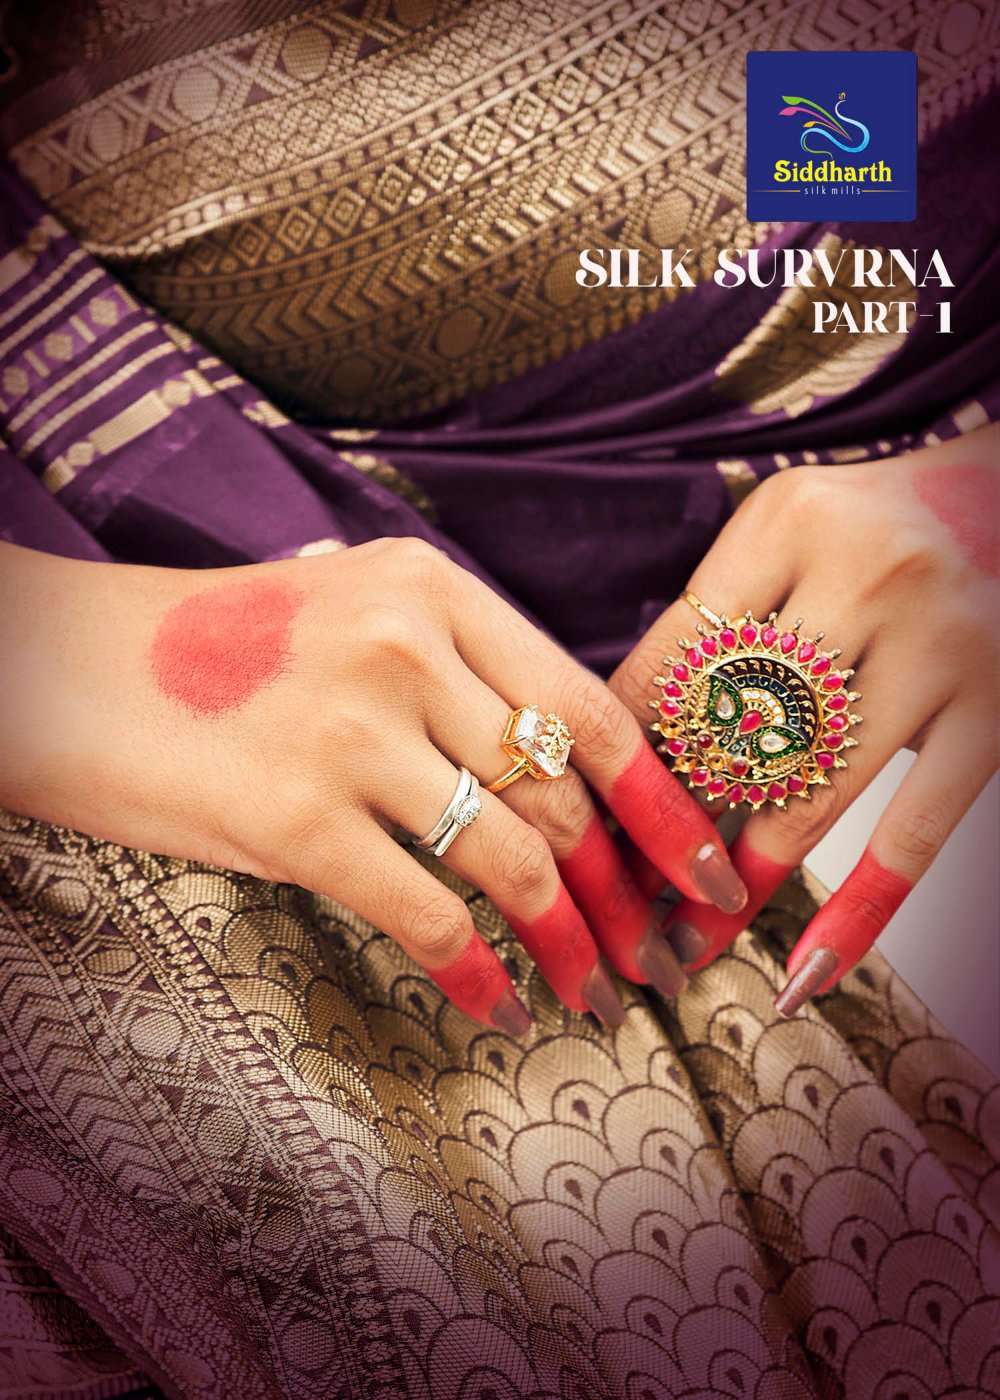 siddharth silk mills present silk survrna vol 1 latest new silk sarees catalog